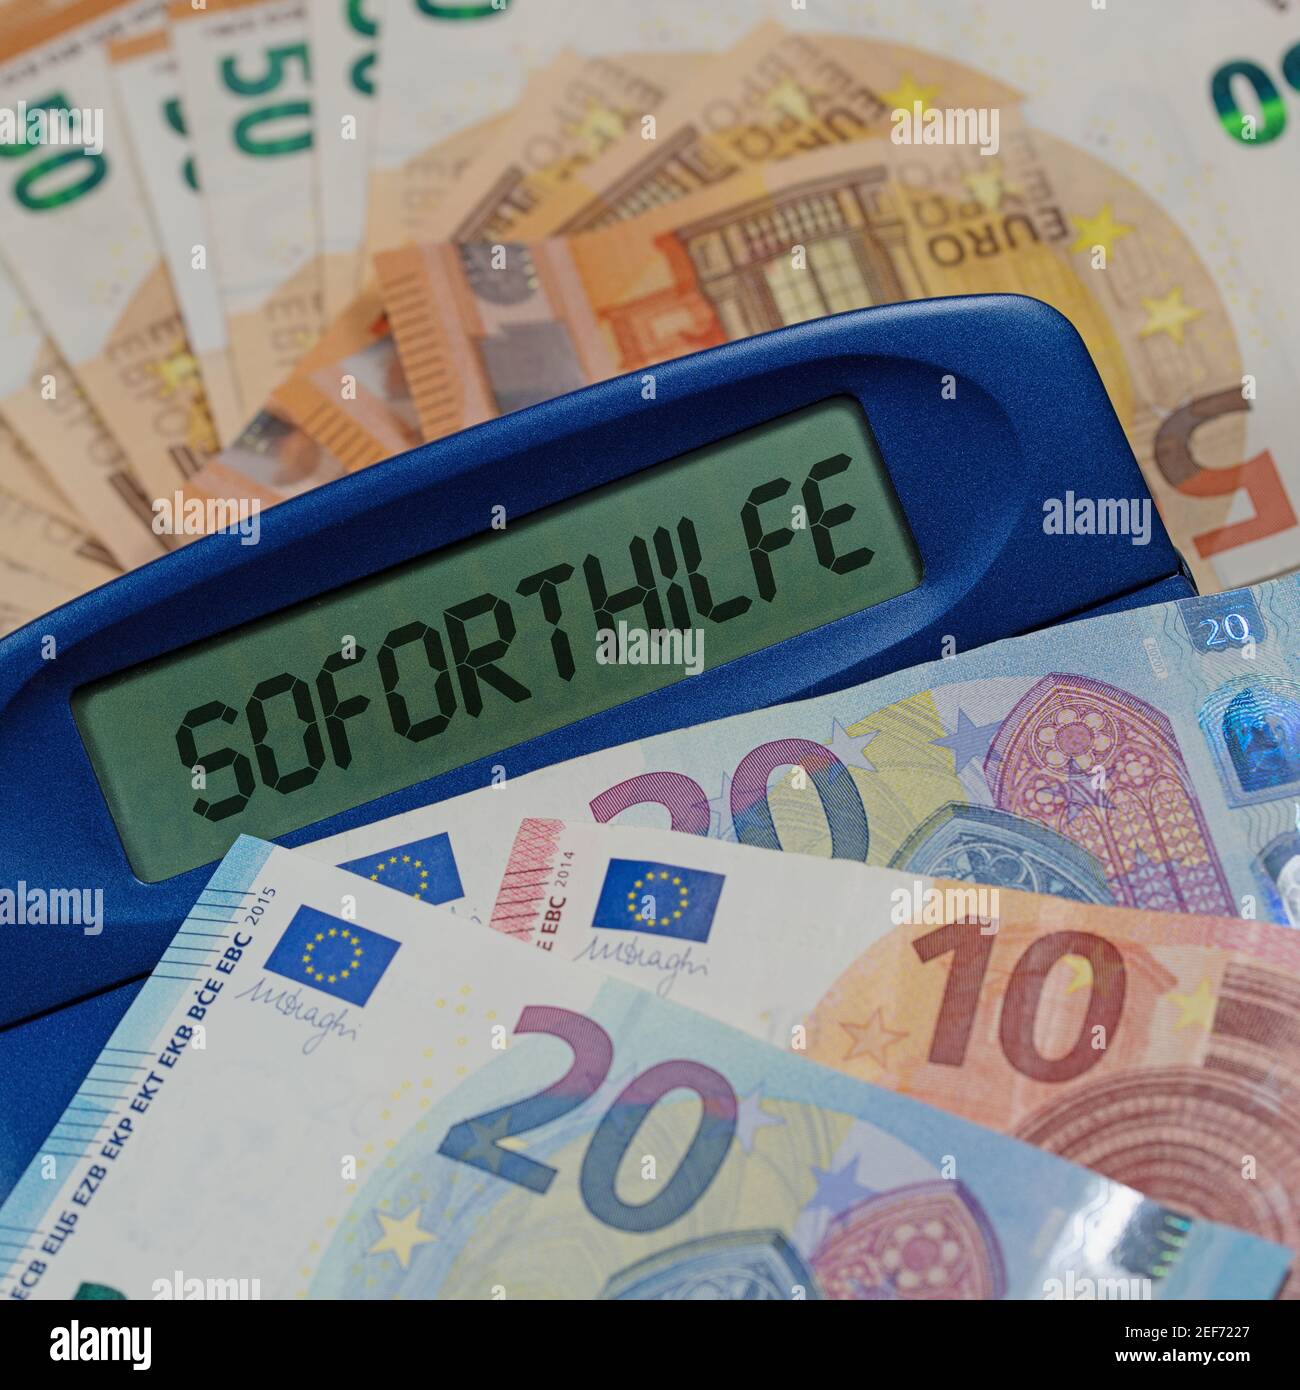 Calculatrice avec le mot 'sodirectt', translation'aide immédiate', à l'écran Banque D'Images